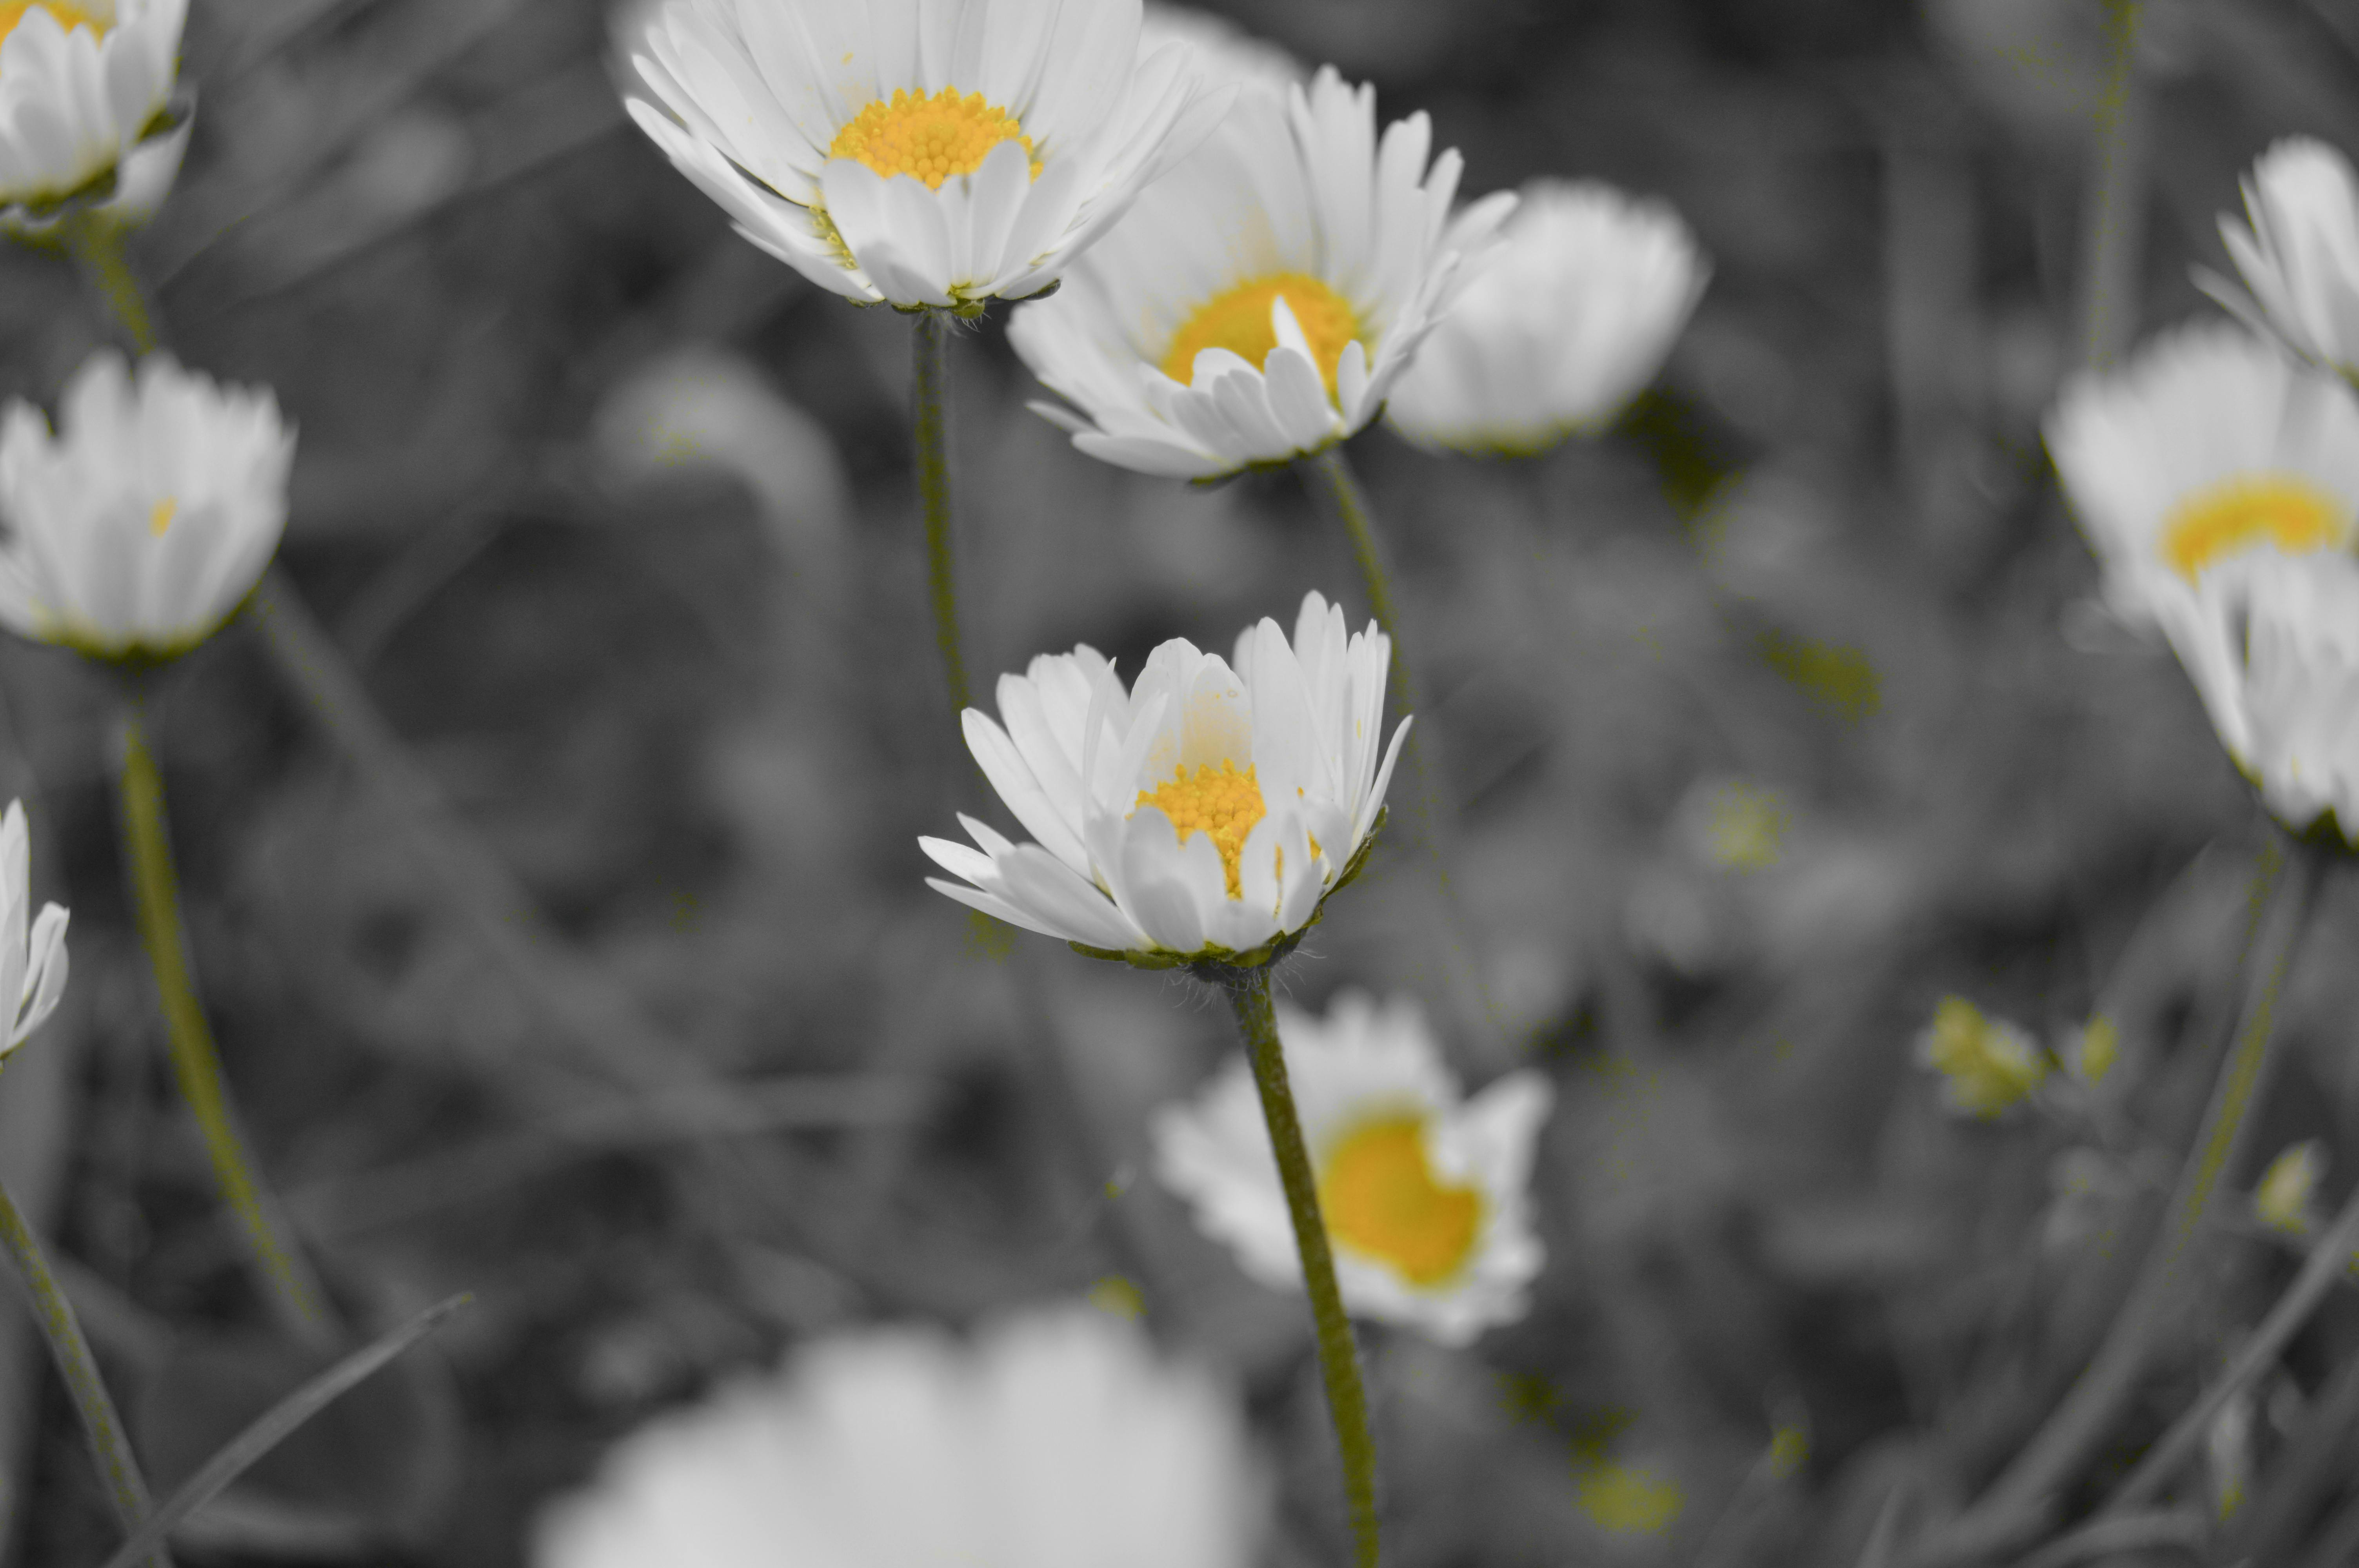 600 Gambar  Bunga  Aster  Putih Terbaru Infobaru